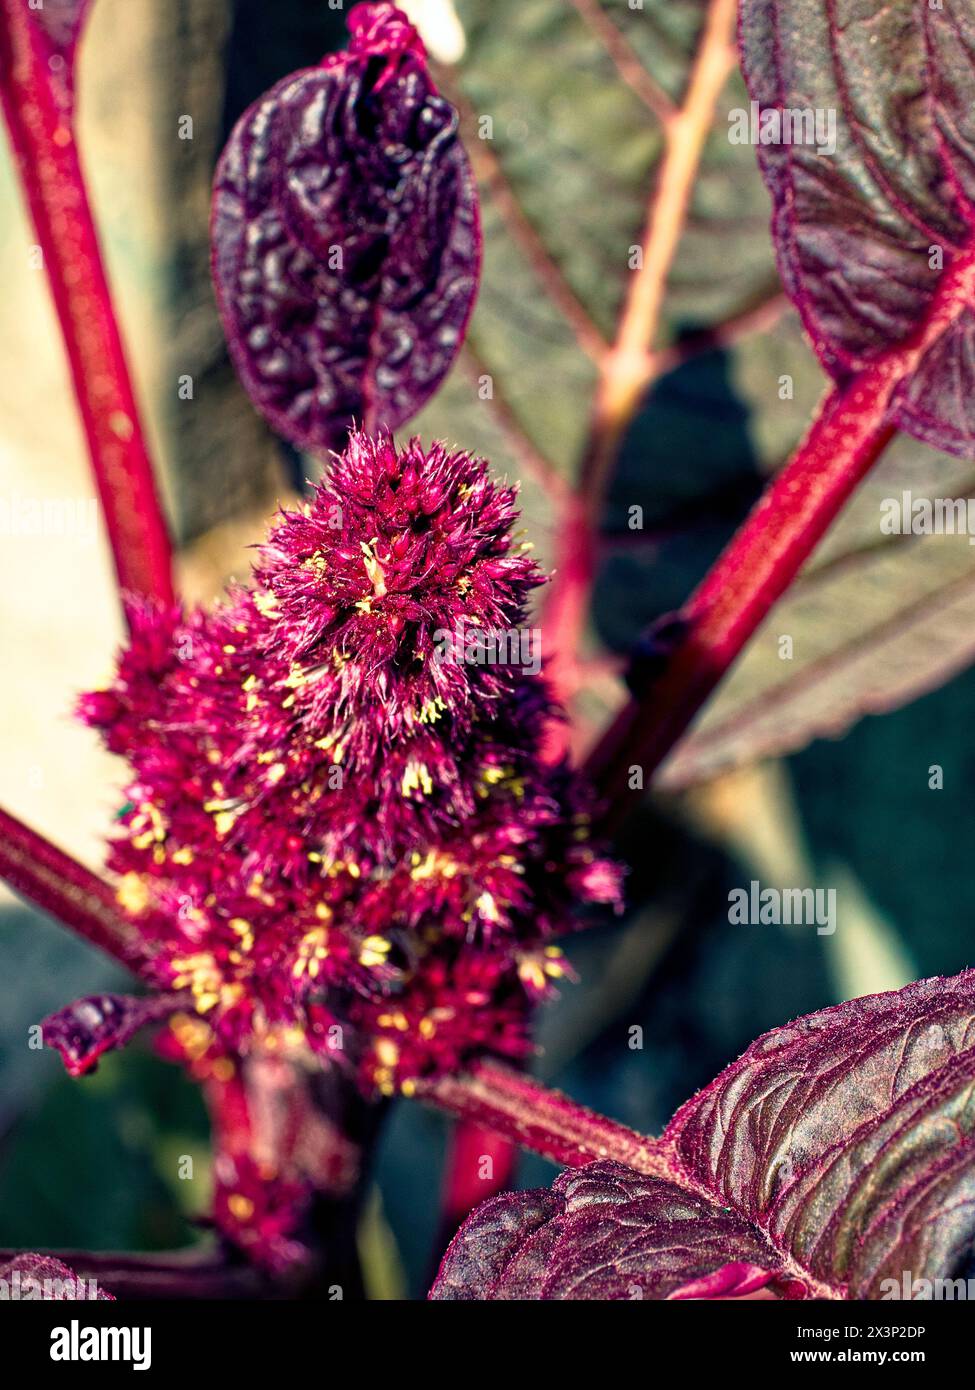 Eine detaillierte Textur einer rot blühenden Pflanze umgeben von tiefgrünem Laub, die an Naturwunder erinnert. Stockfoto